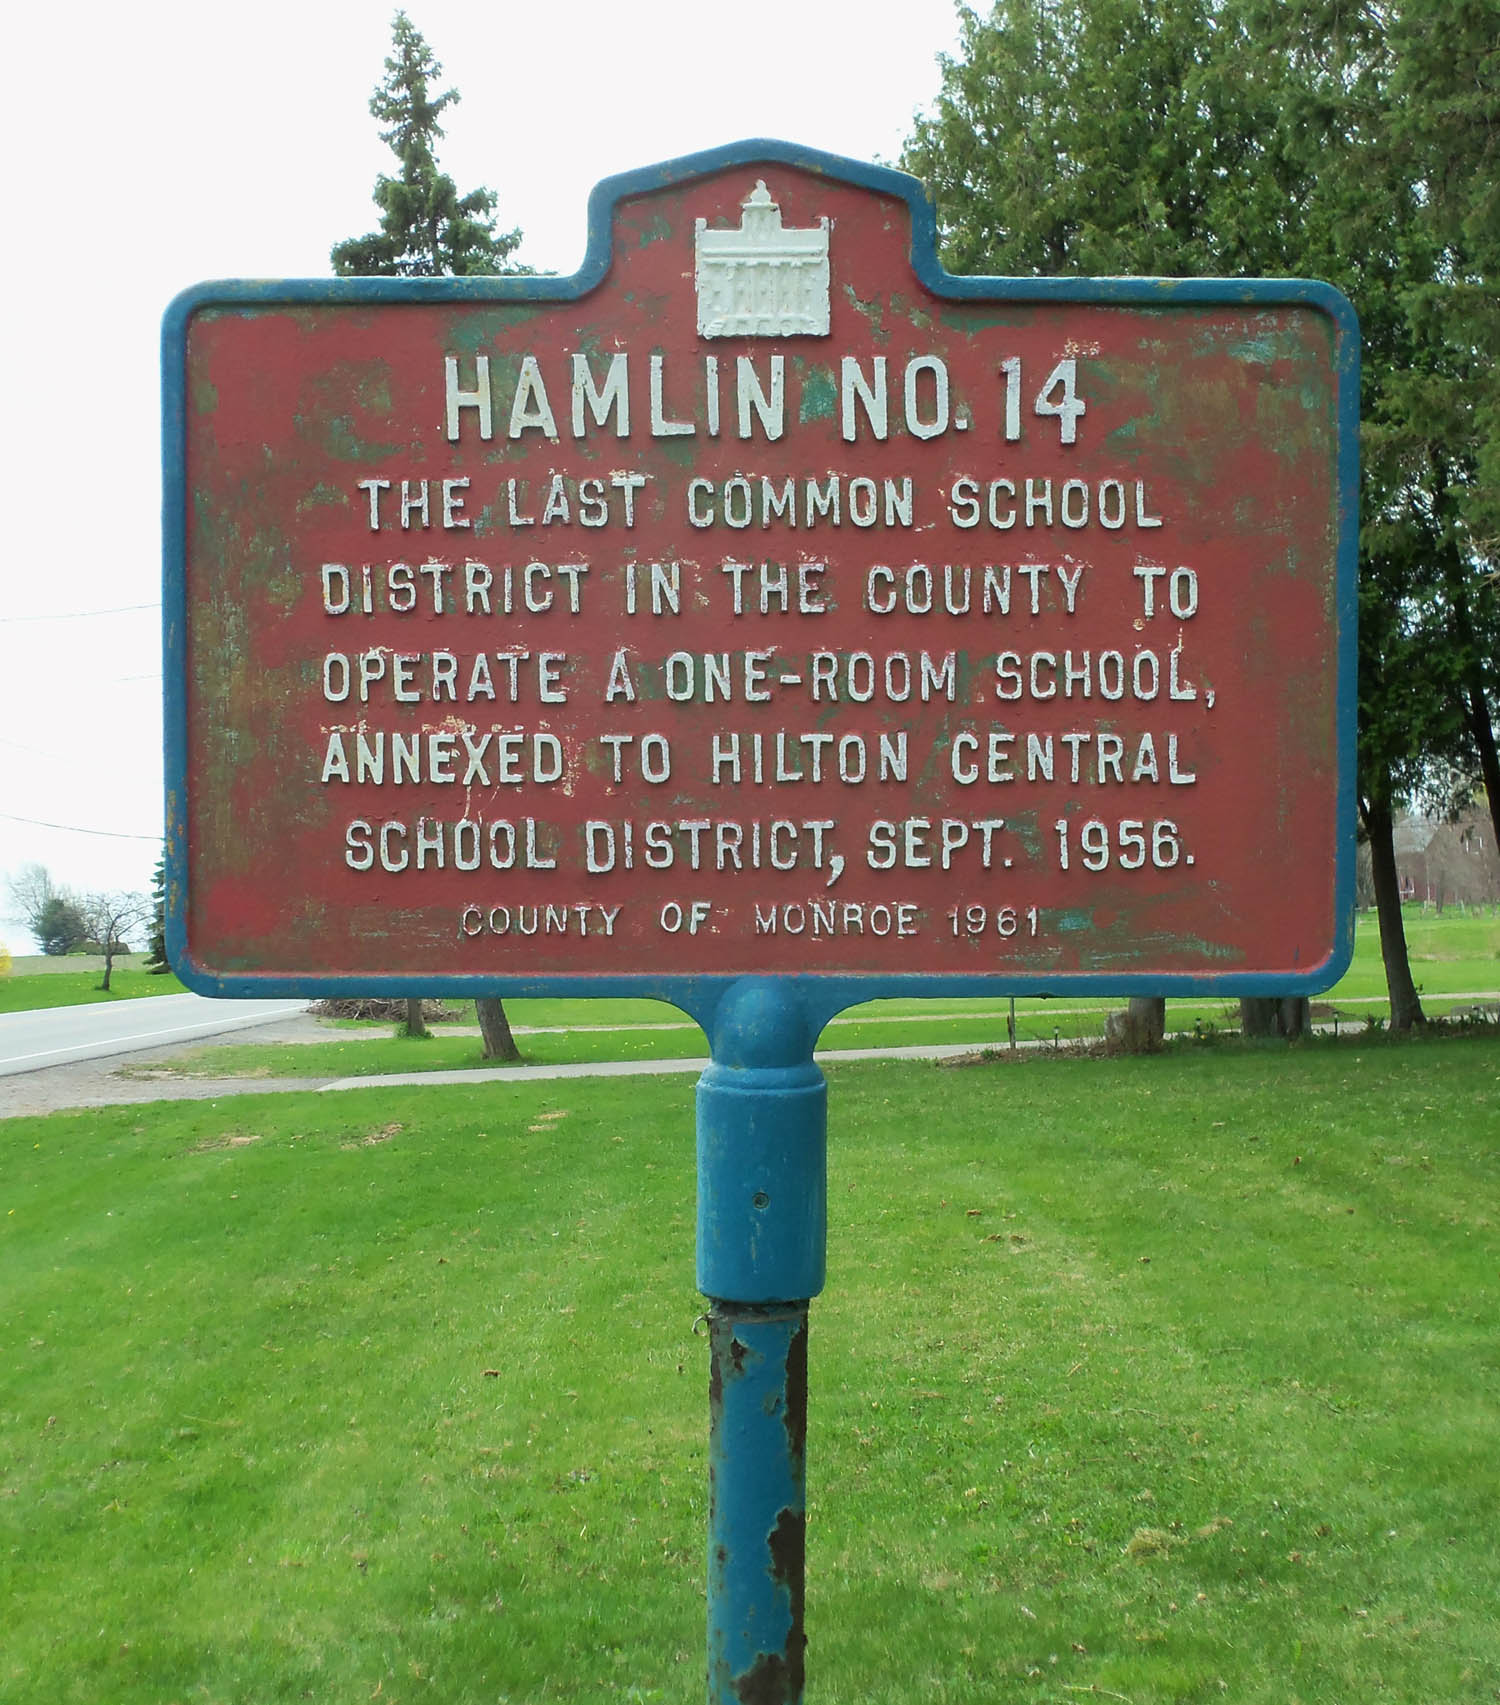 Hamlin No. 14, Hamlin